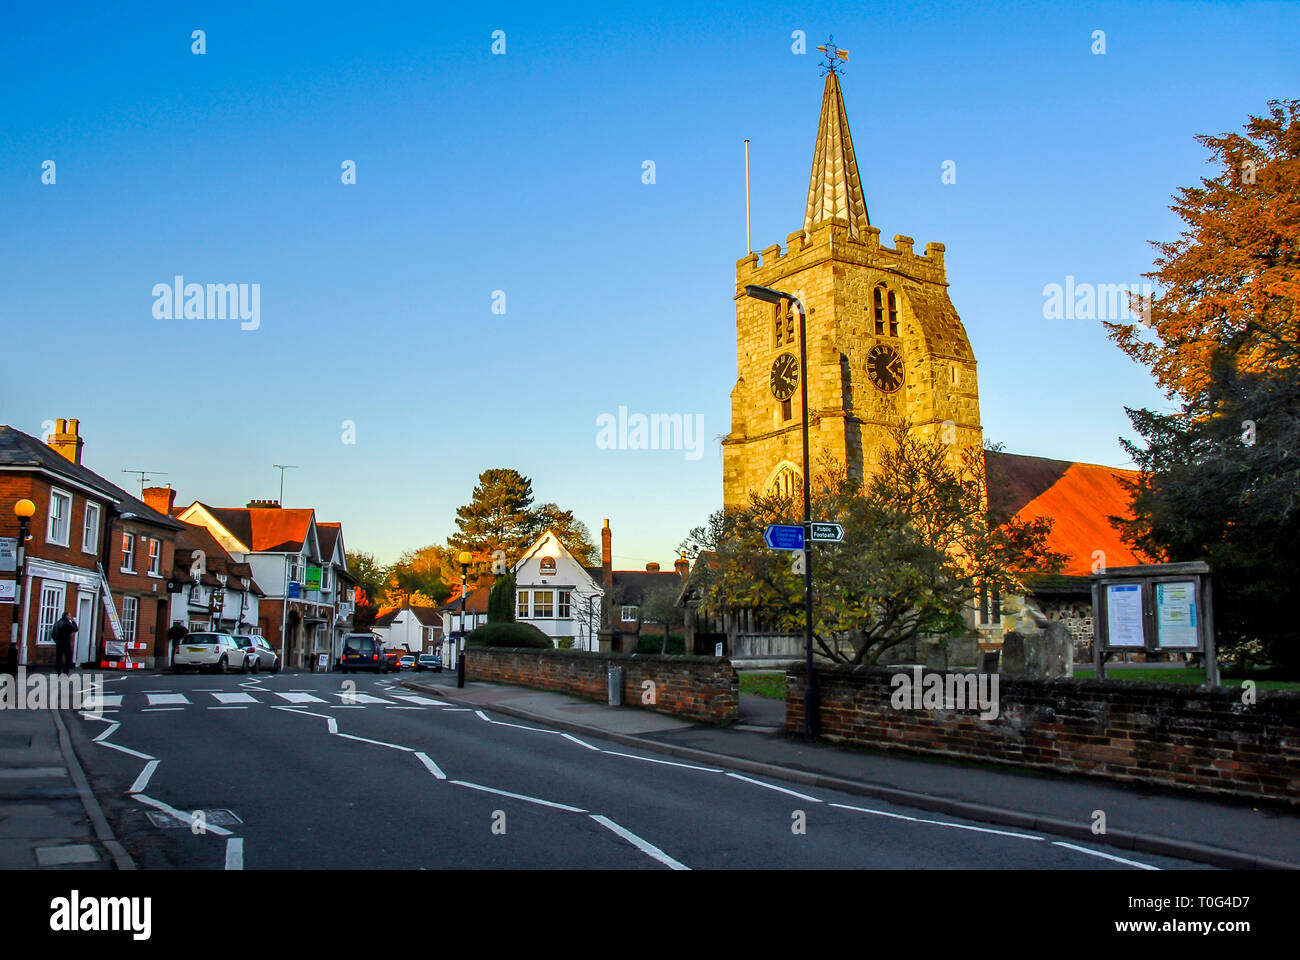 Surrey, UK, 1 November 2012: Chobham Stock Photo